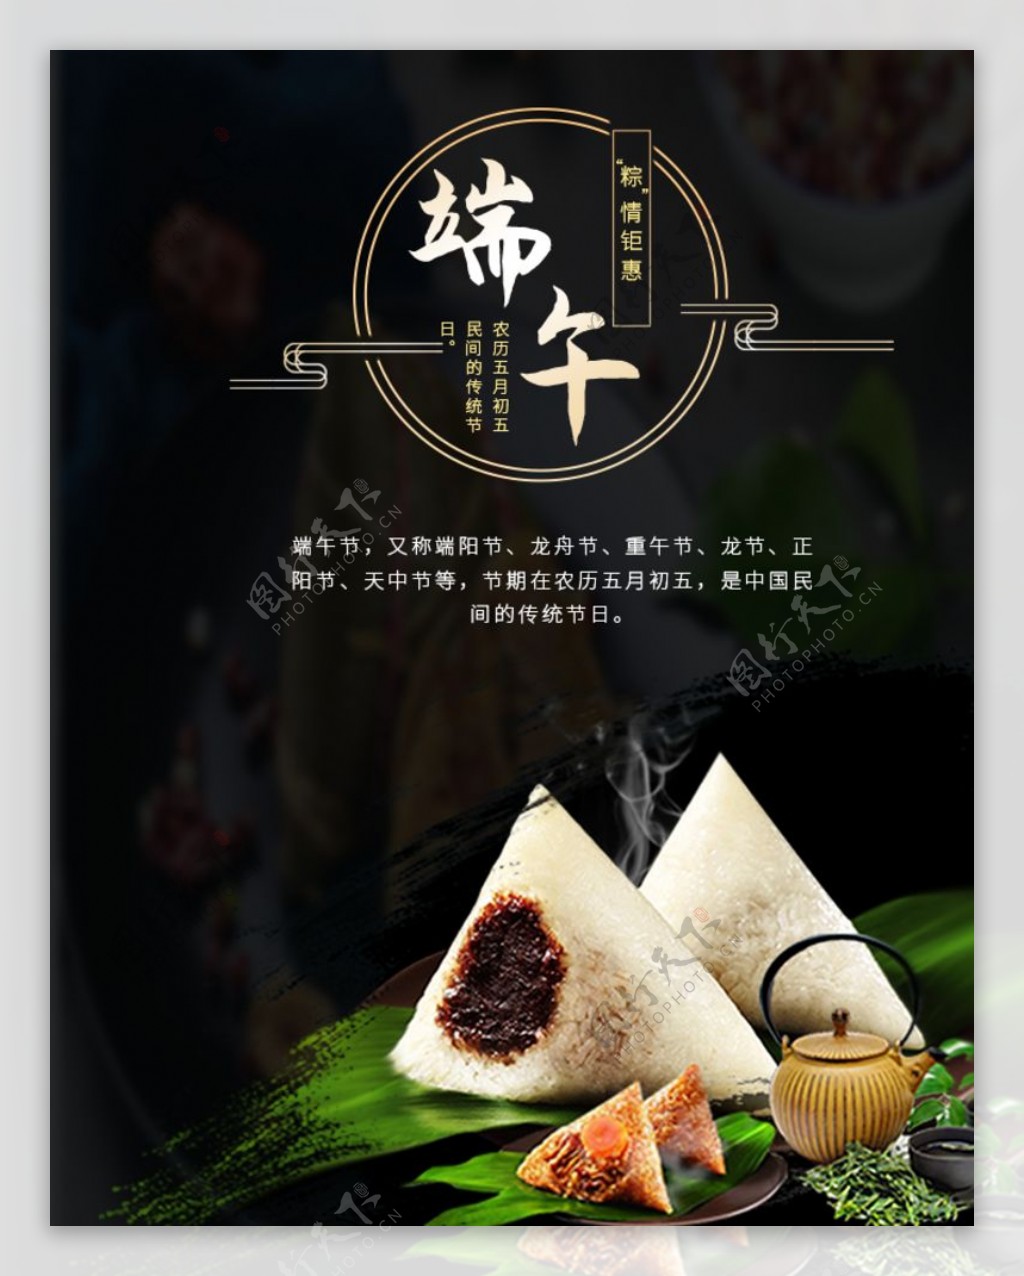 黑色端午粽子节日海报图片